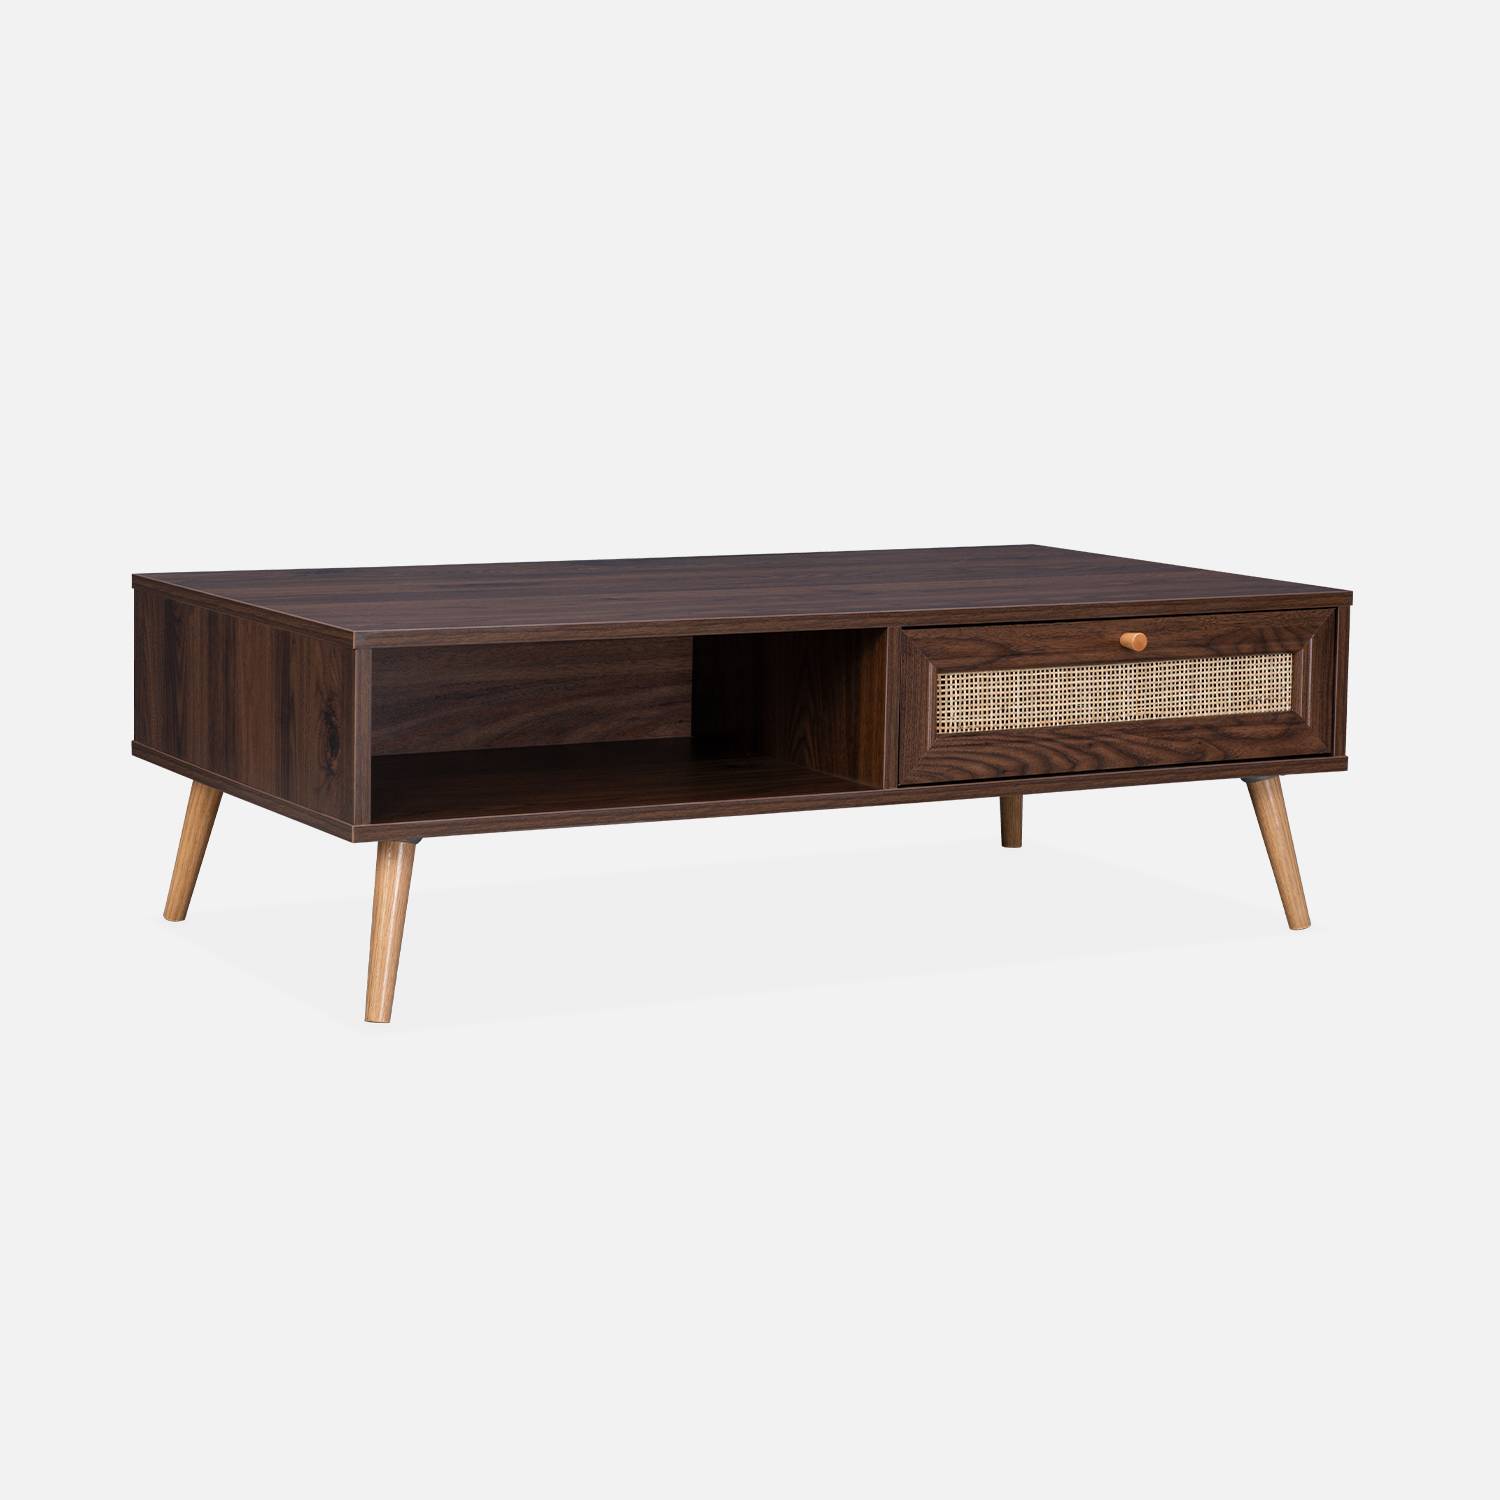 Tavolino cannage 110x59x39cm - Bohème - colore legno scuro, 1 cassetto, 1 vano portaoggetti, gambe scandinave,sweeek,Photo3